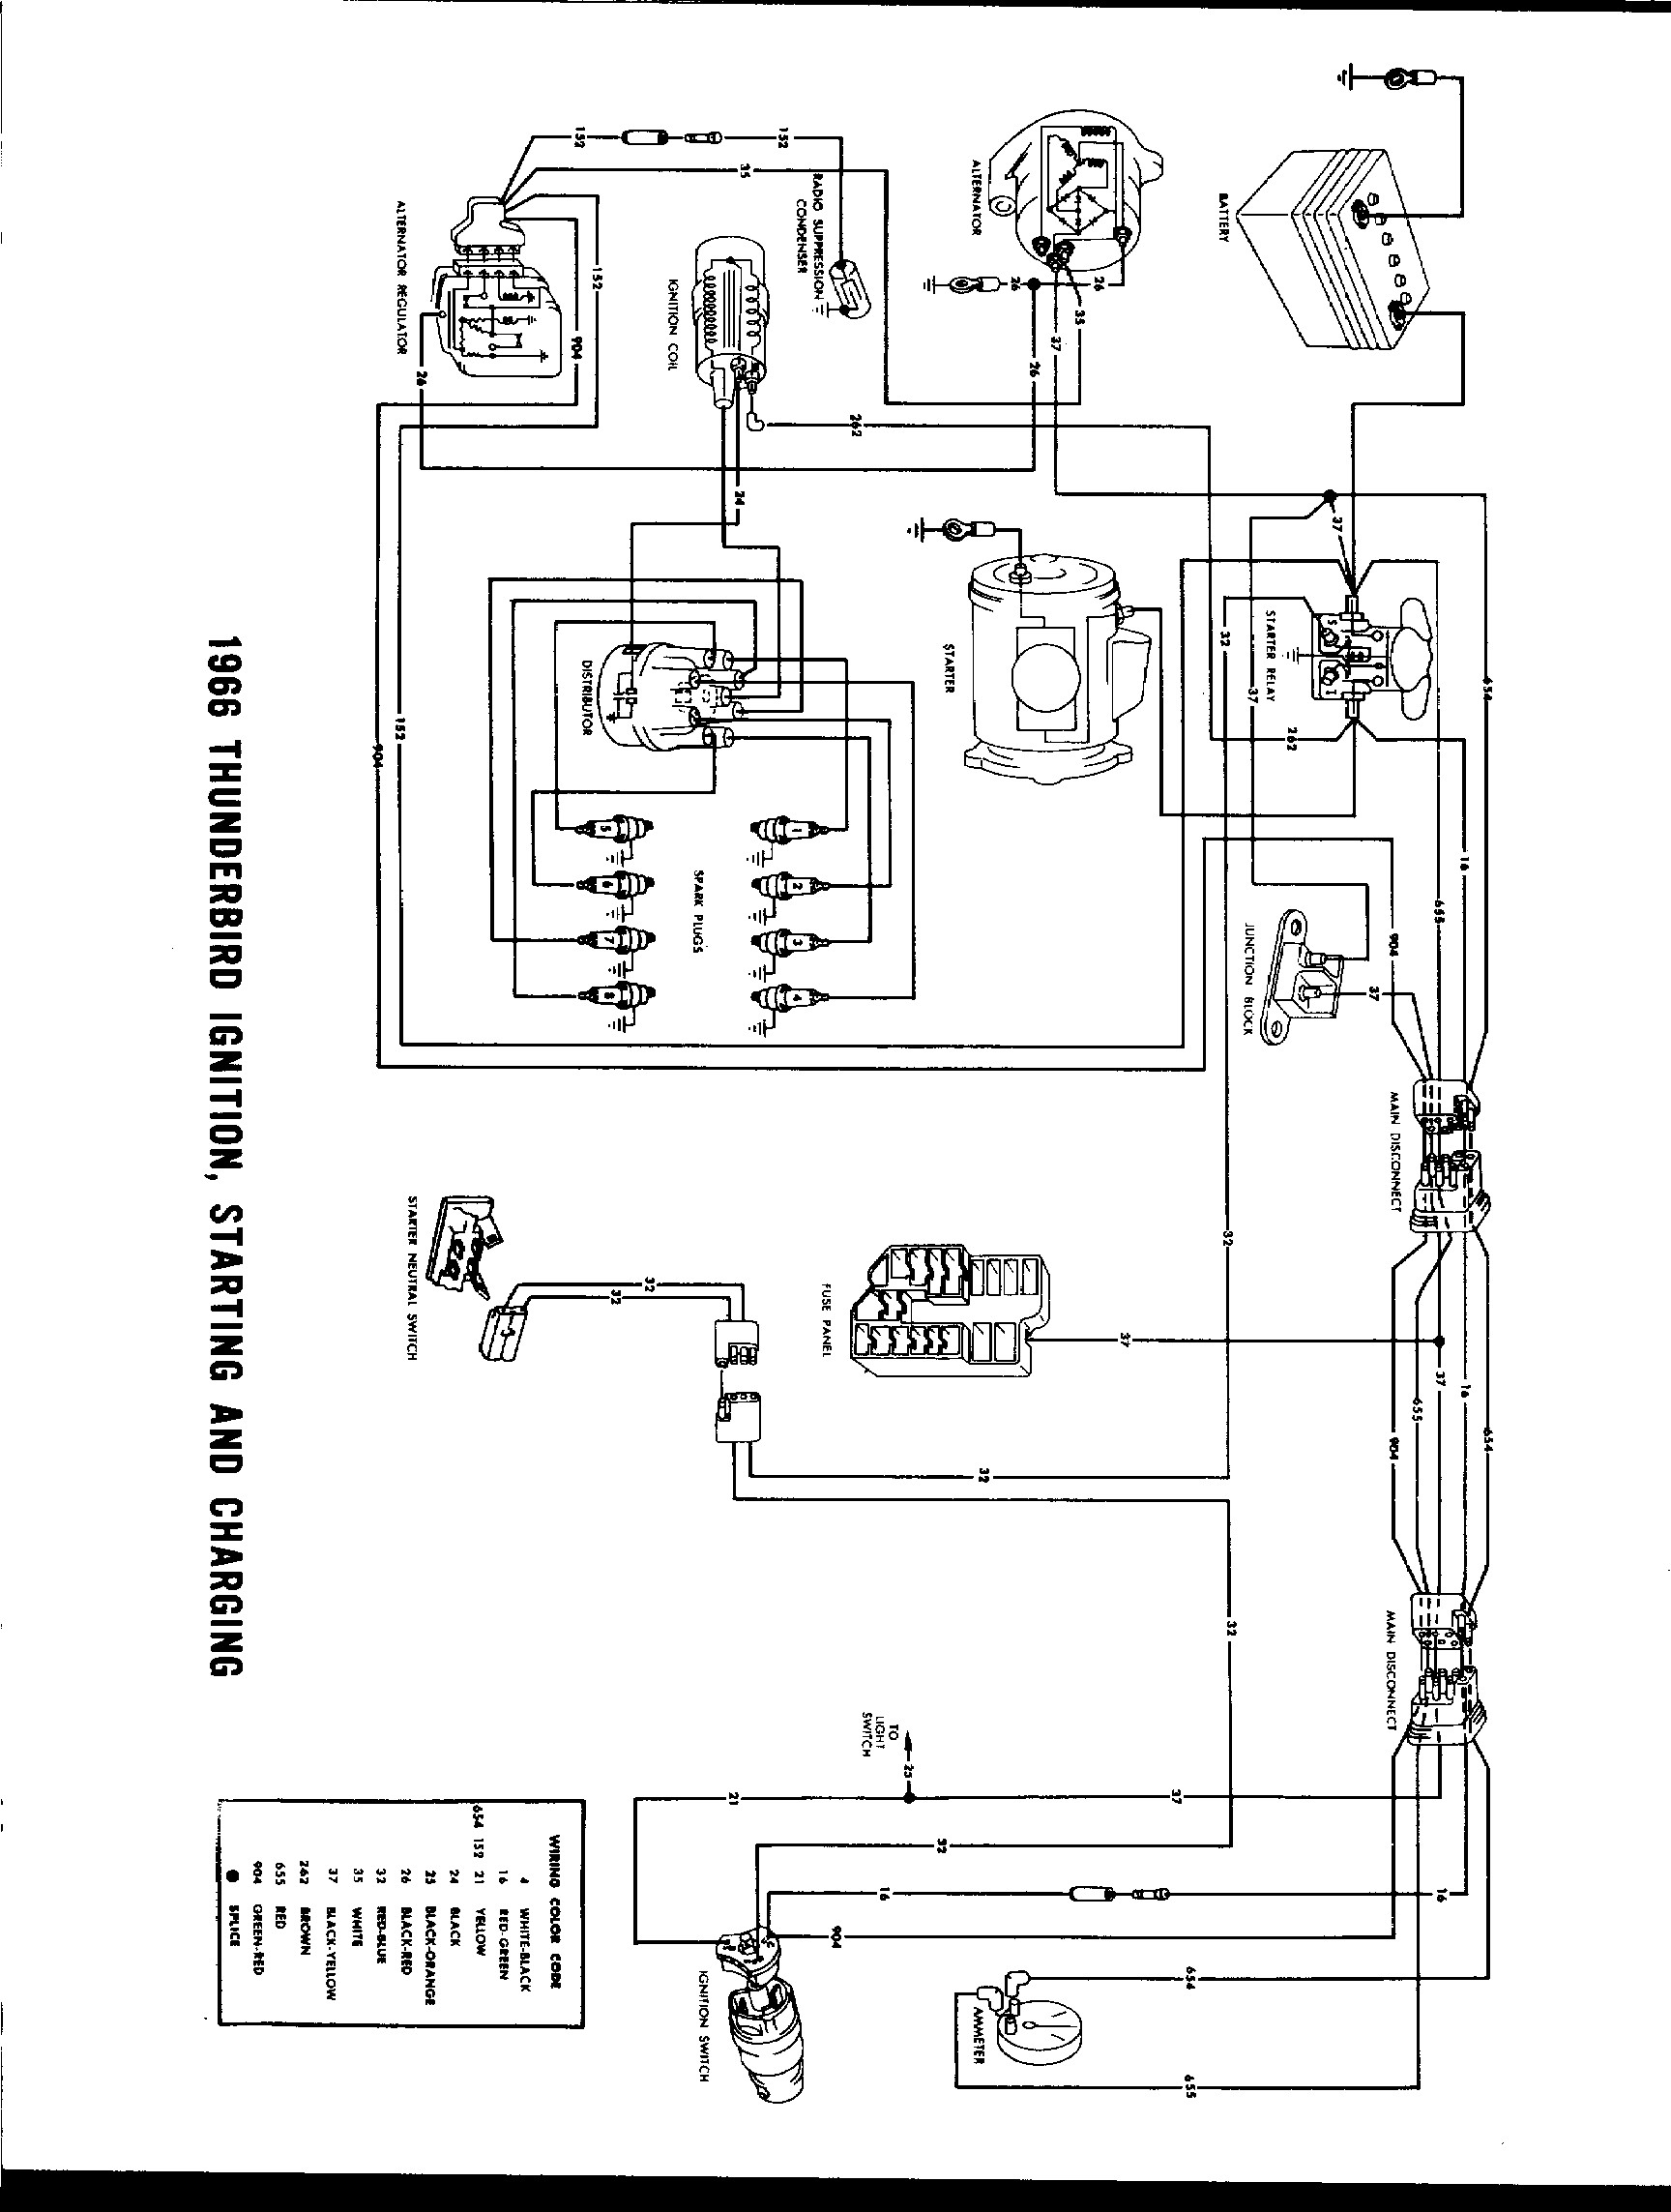 Motor Control Wiring Diagram from detoxicrecenze.com